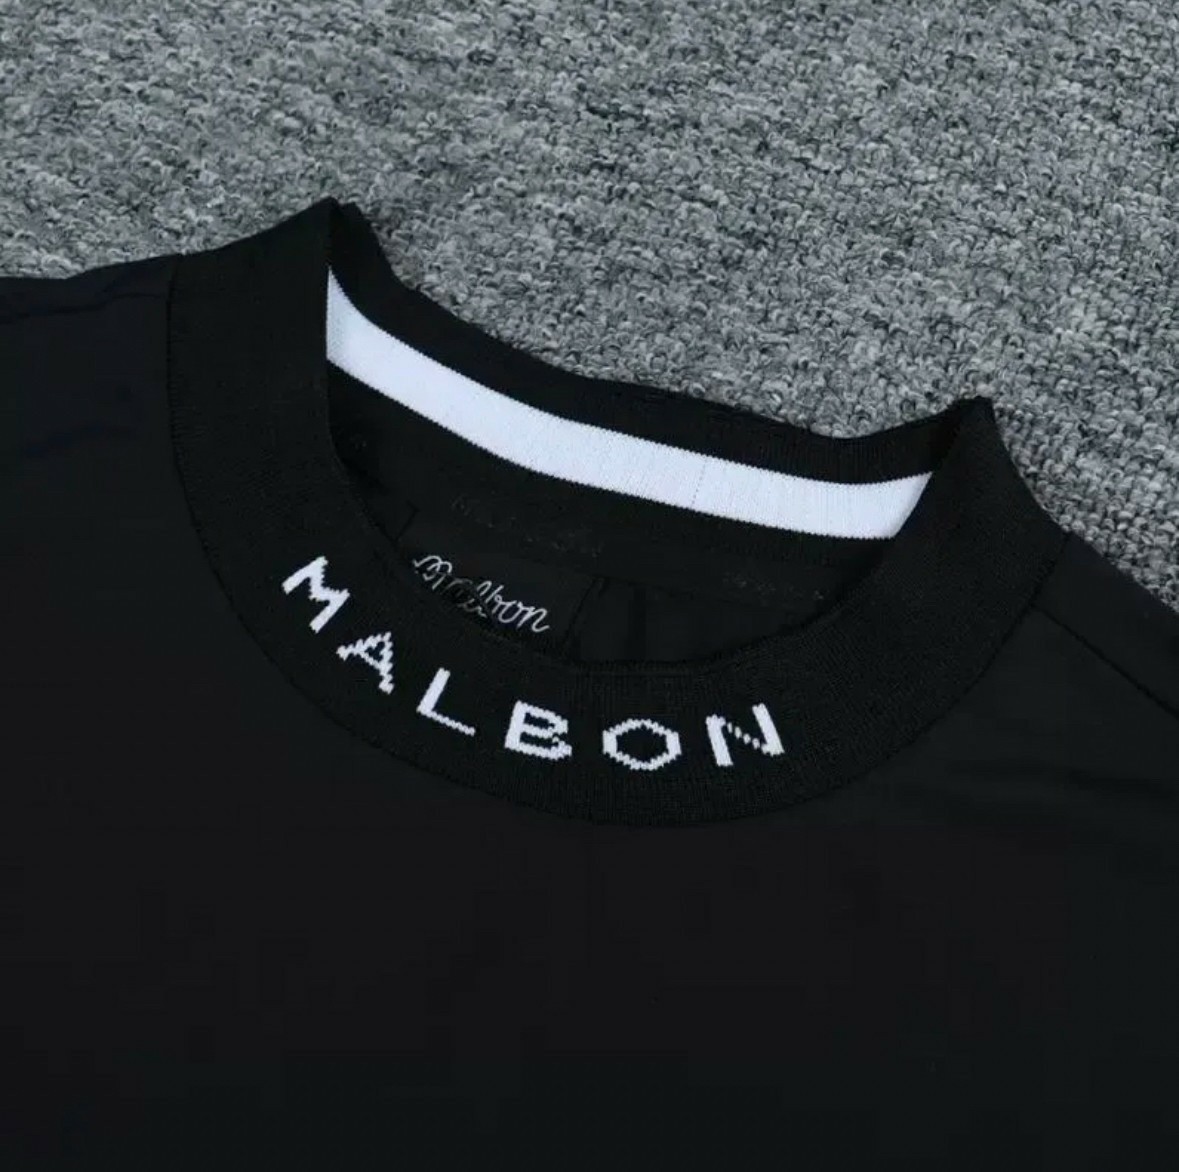 L》マルボンゴルフ モックネック Tシャツ ブラック 韓国 ゴルフ 